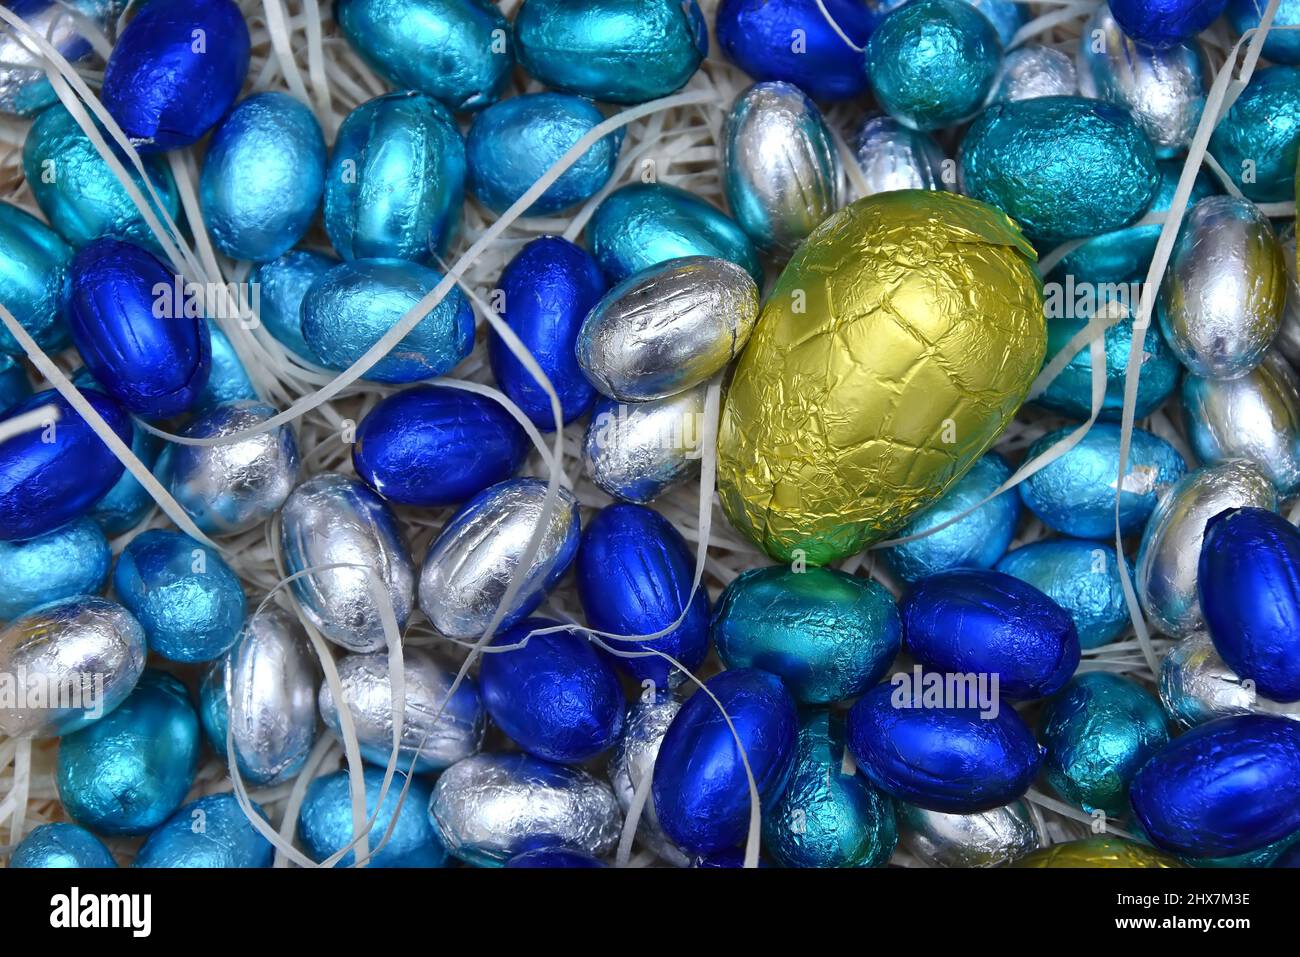 Mucchio di coloratissimi fogli di pastello al cioccolato uova di pasqua in blu, argento e turchese con un grande uovo giallo al centro, su fondo pallido. Foto Stock